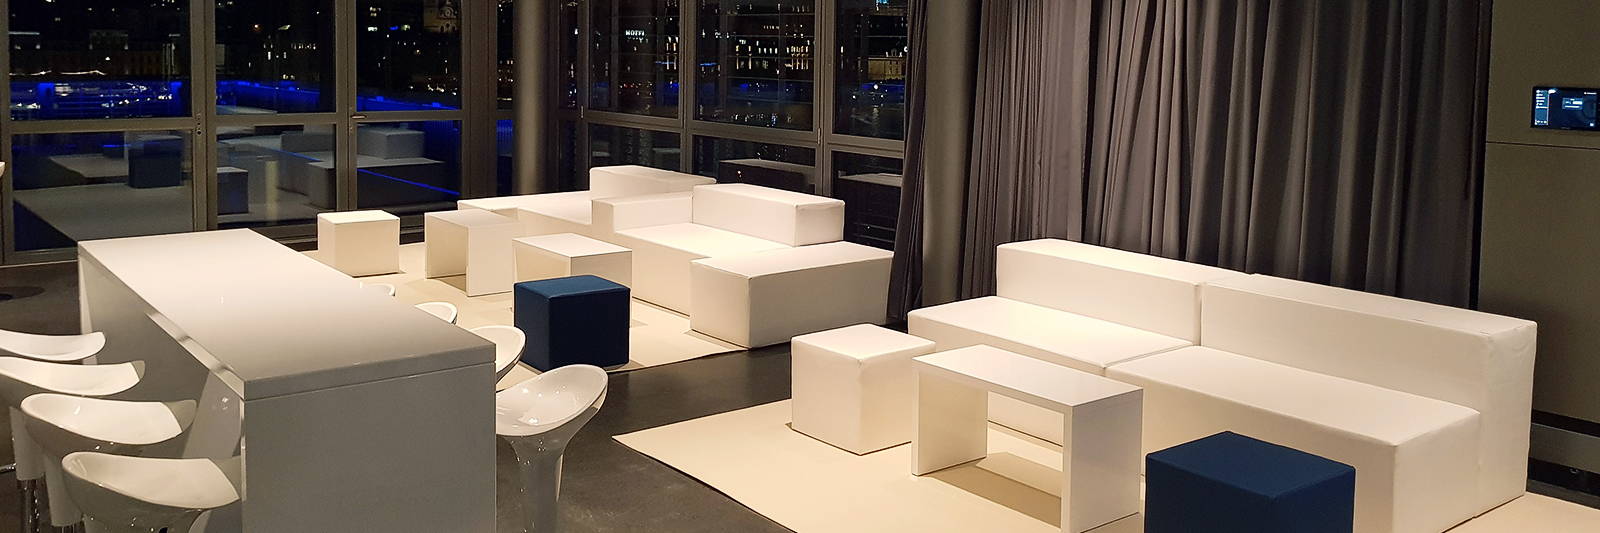 Weisse Lounge Möbel mieten für Event & Promotion